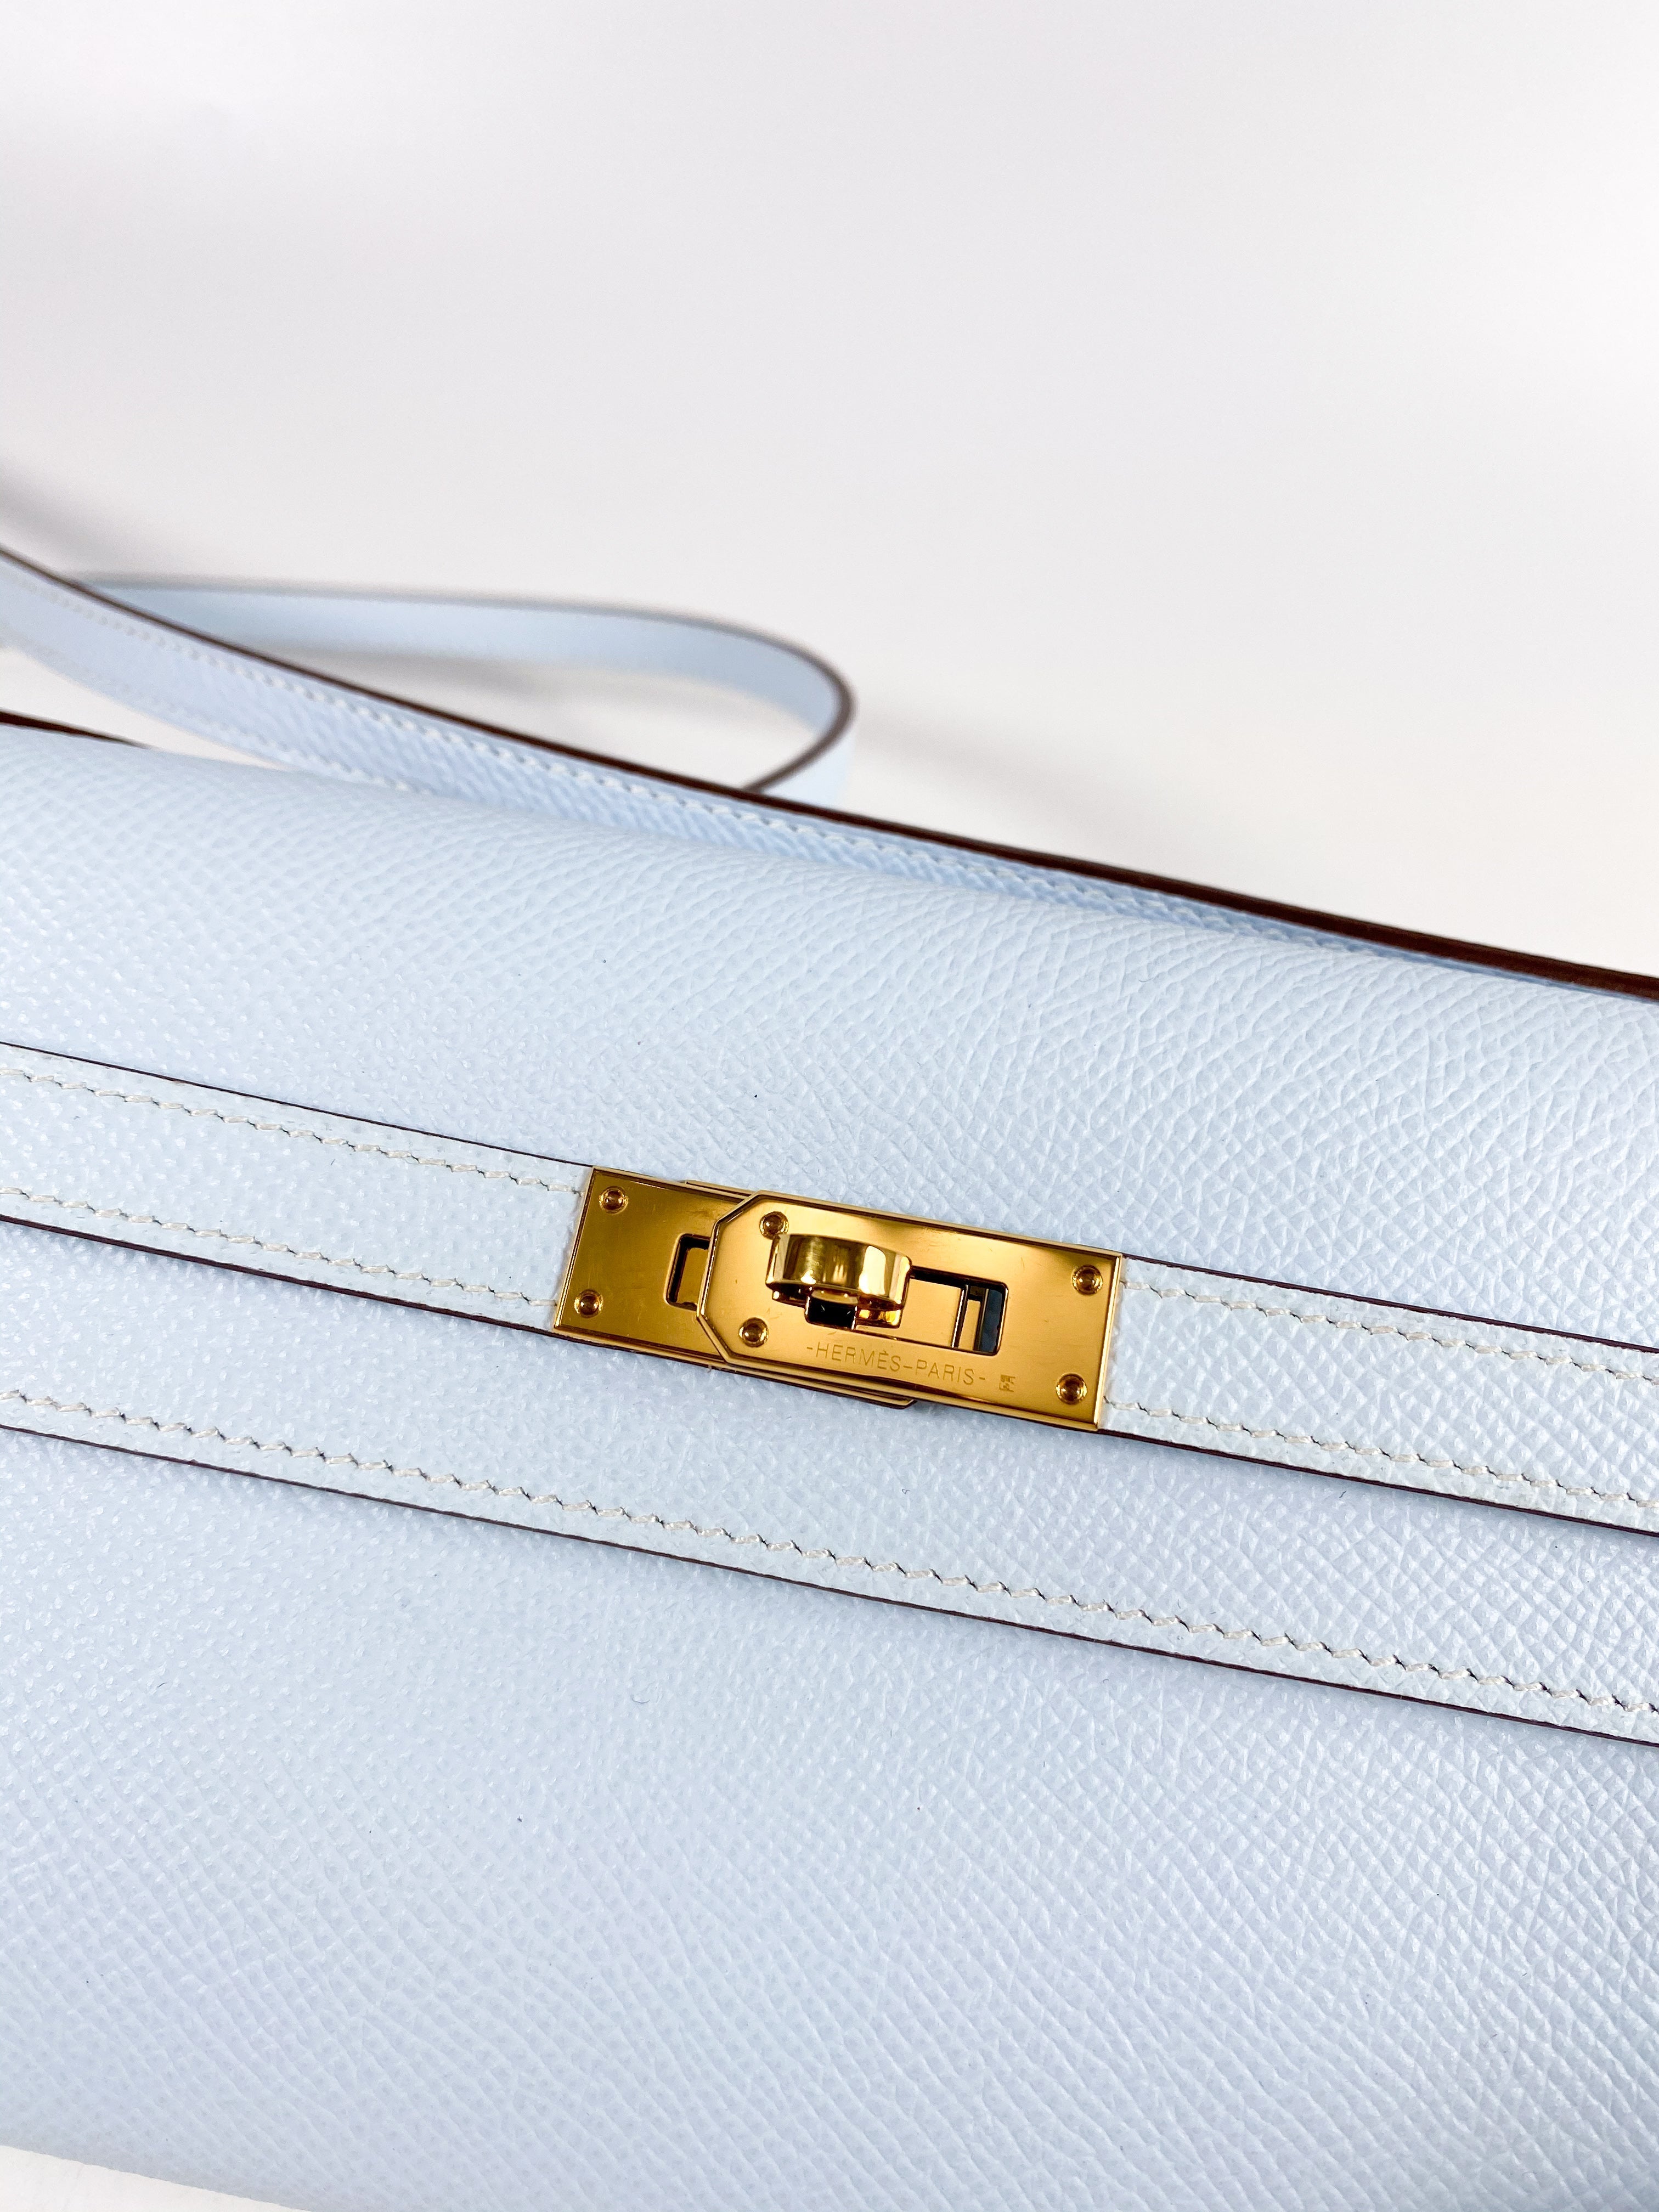 Hermes Kelly Wallet To Go in Bleu Brume Epsom Leather